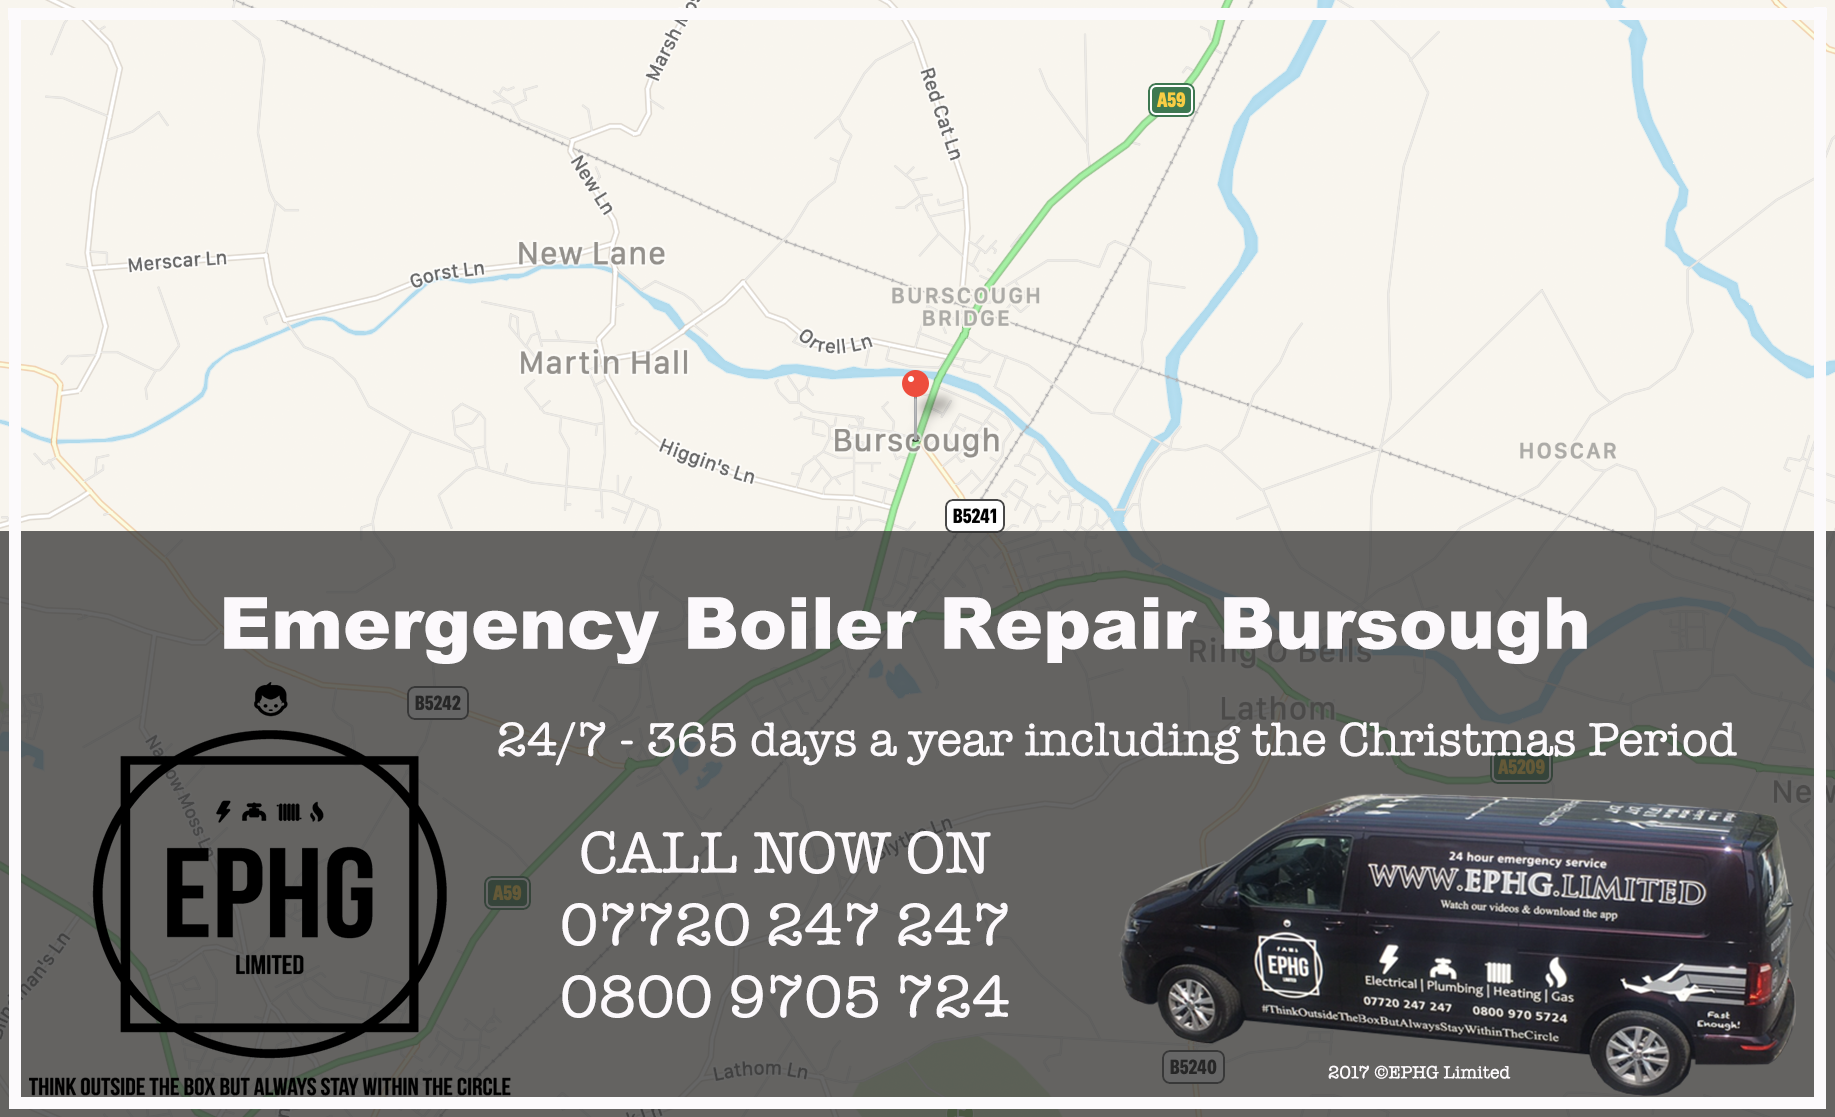 24 Hour Emergency Boiler Repair Burscough